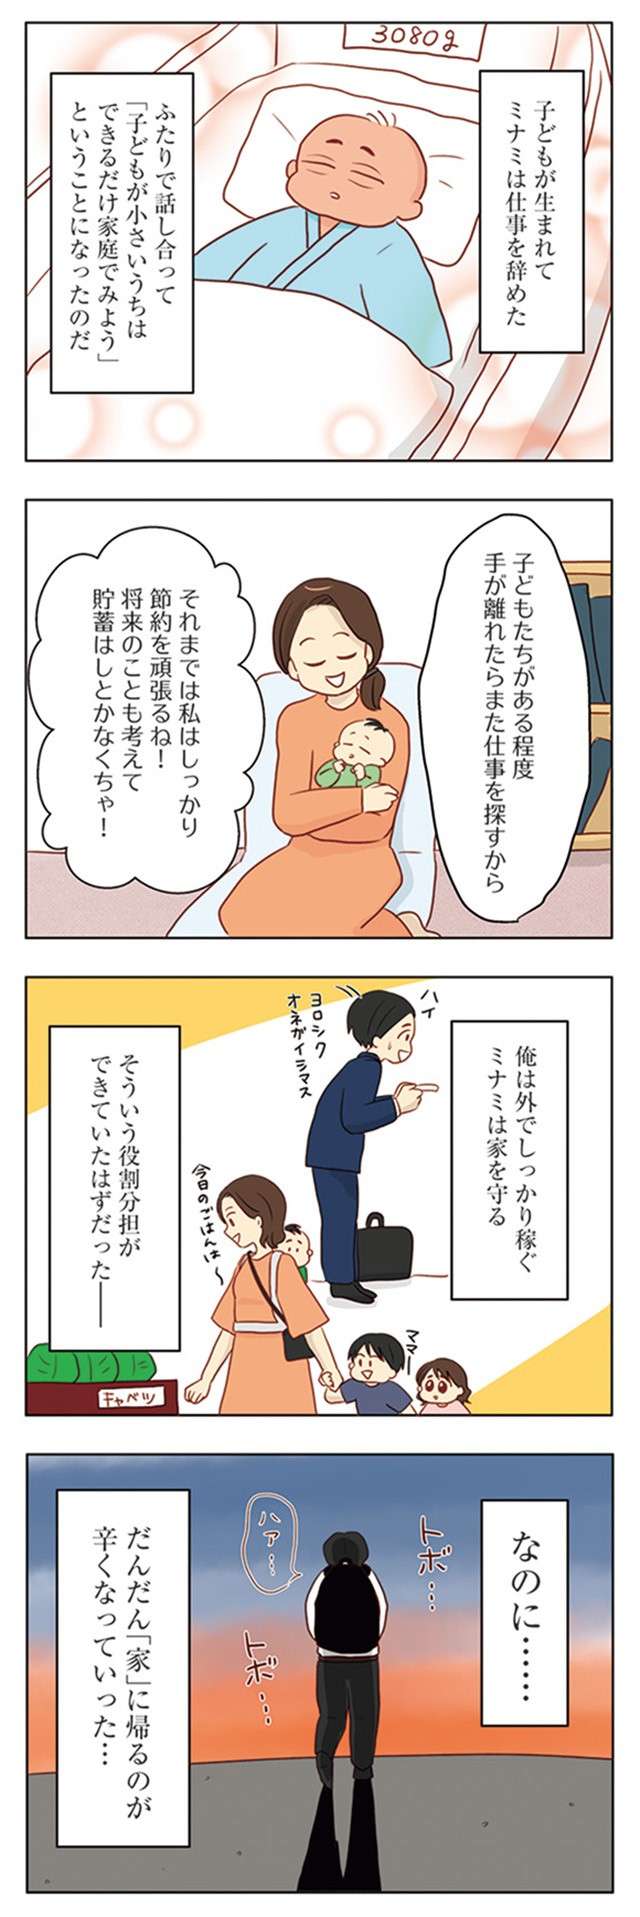 「家に帰るのが辛くなってきた」夫。妻の「げんなりする言動」とは／妻の飯がマズくて離婚したい tsumanomeshi-i-019.jpg